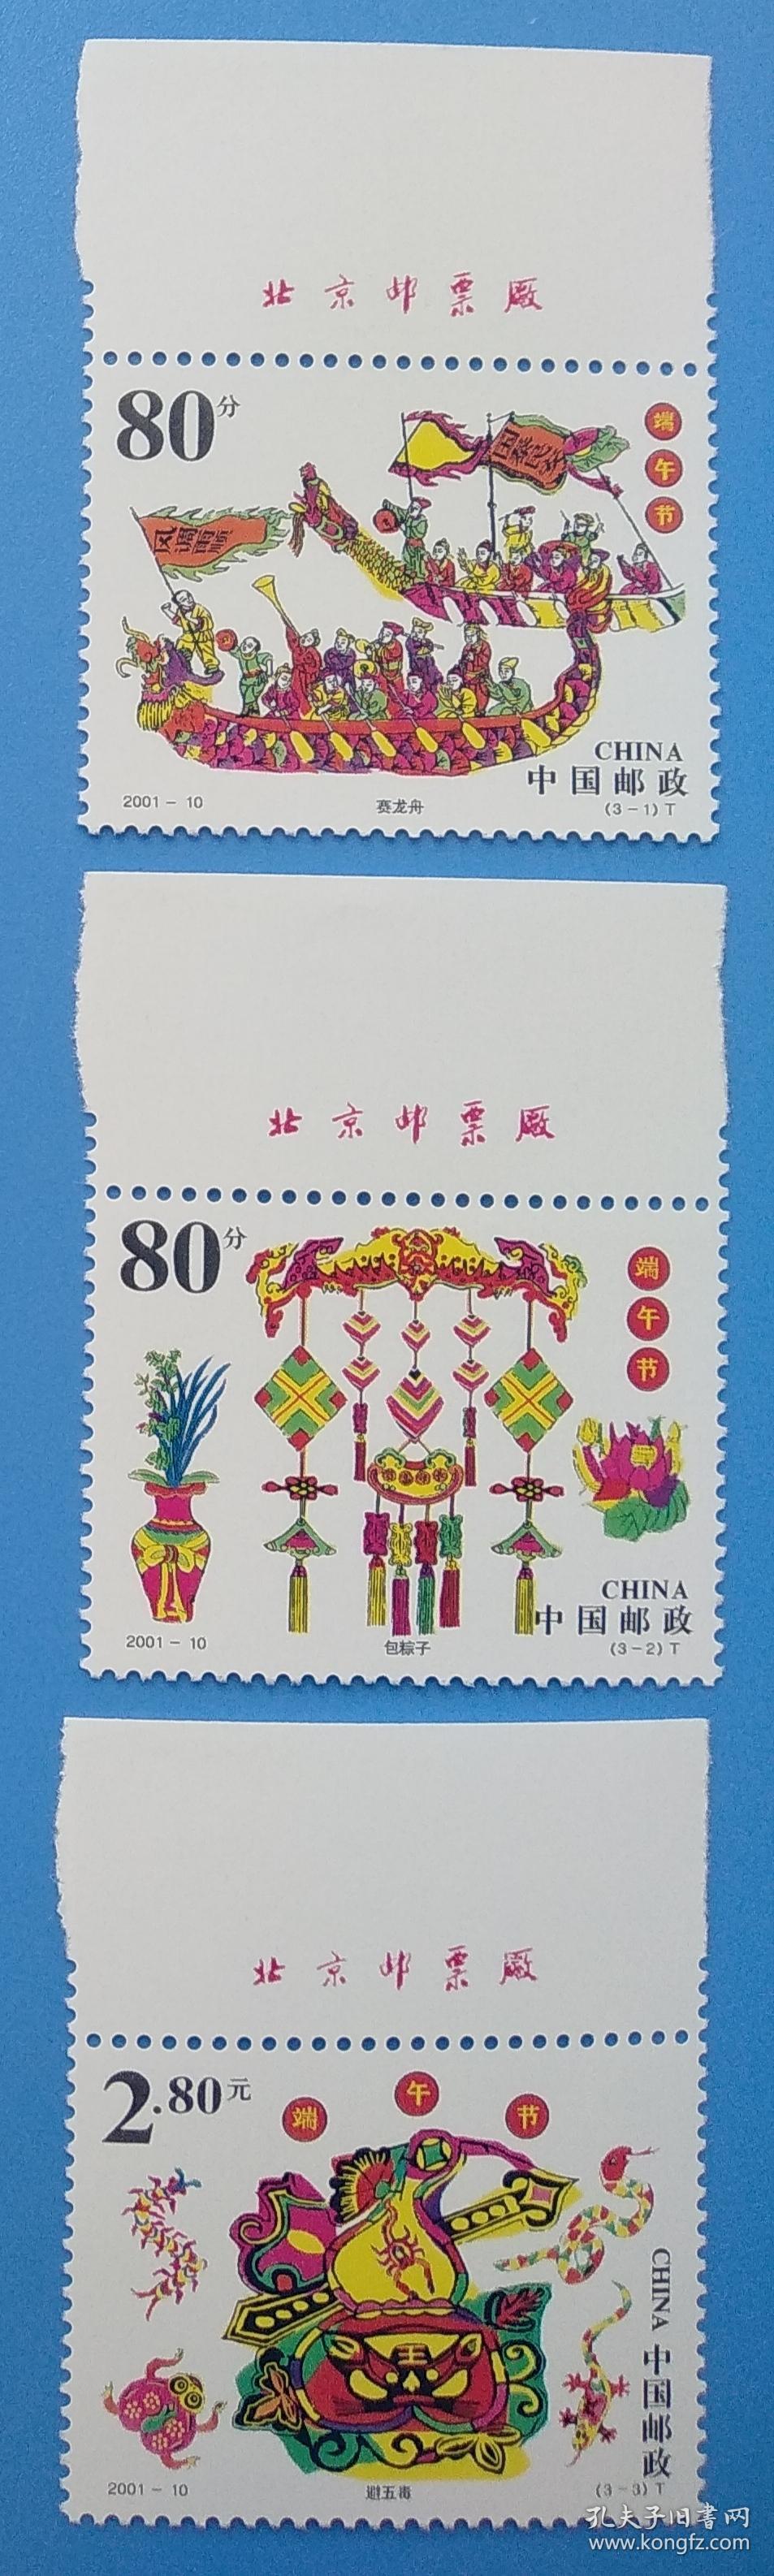 2001-10 端午节特种邮票带厂铭